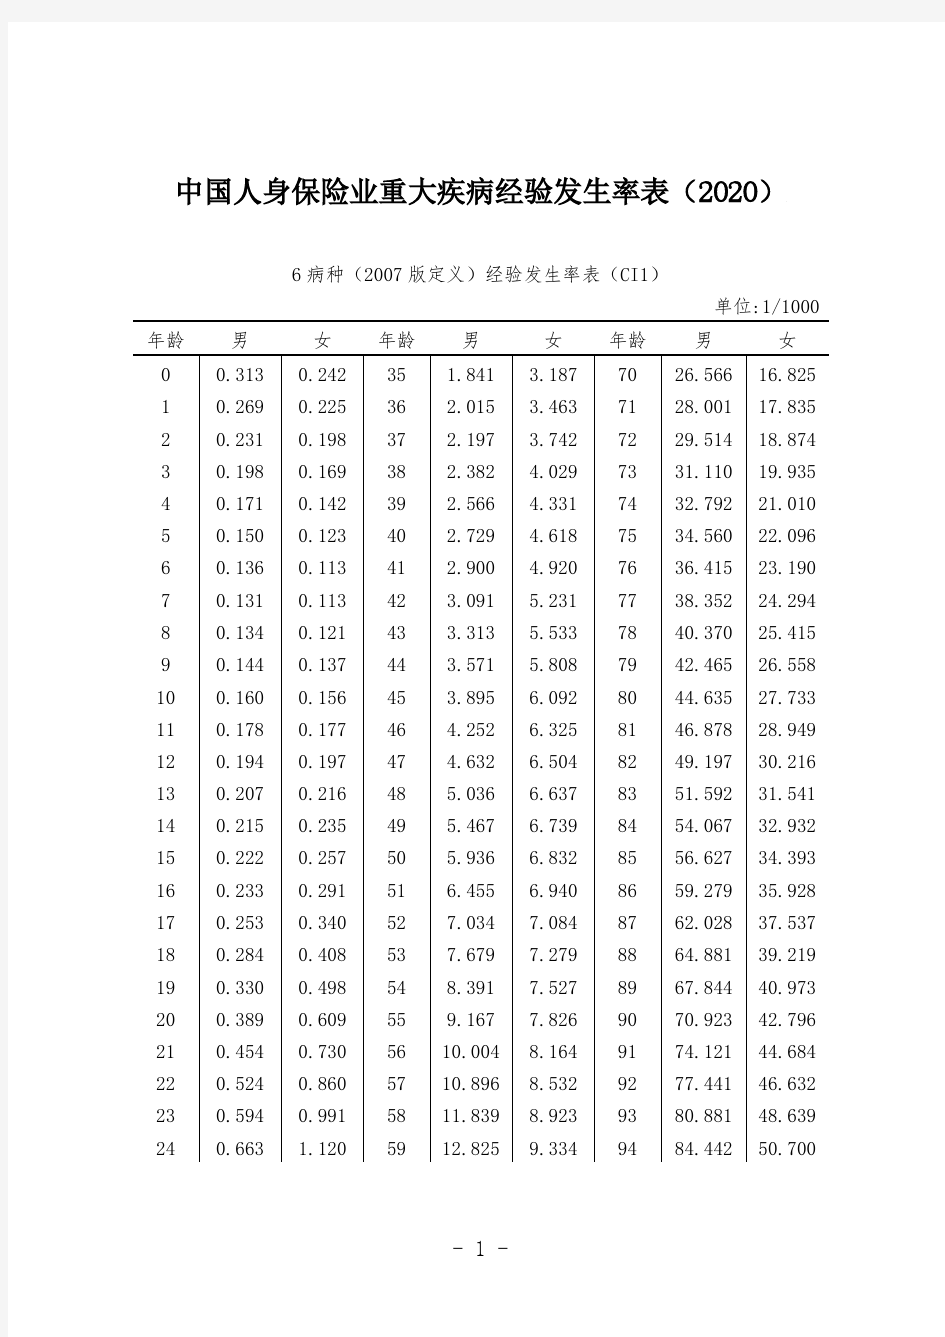 中国人身保险业重大疾病经验发生率表(2020)